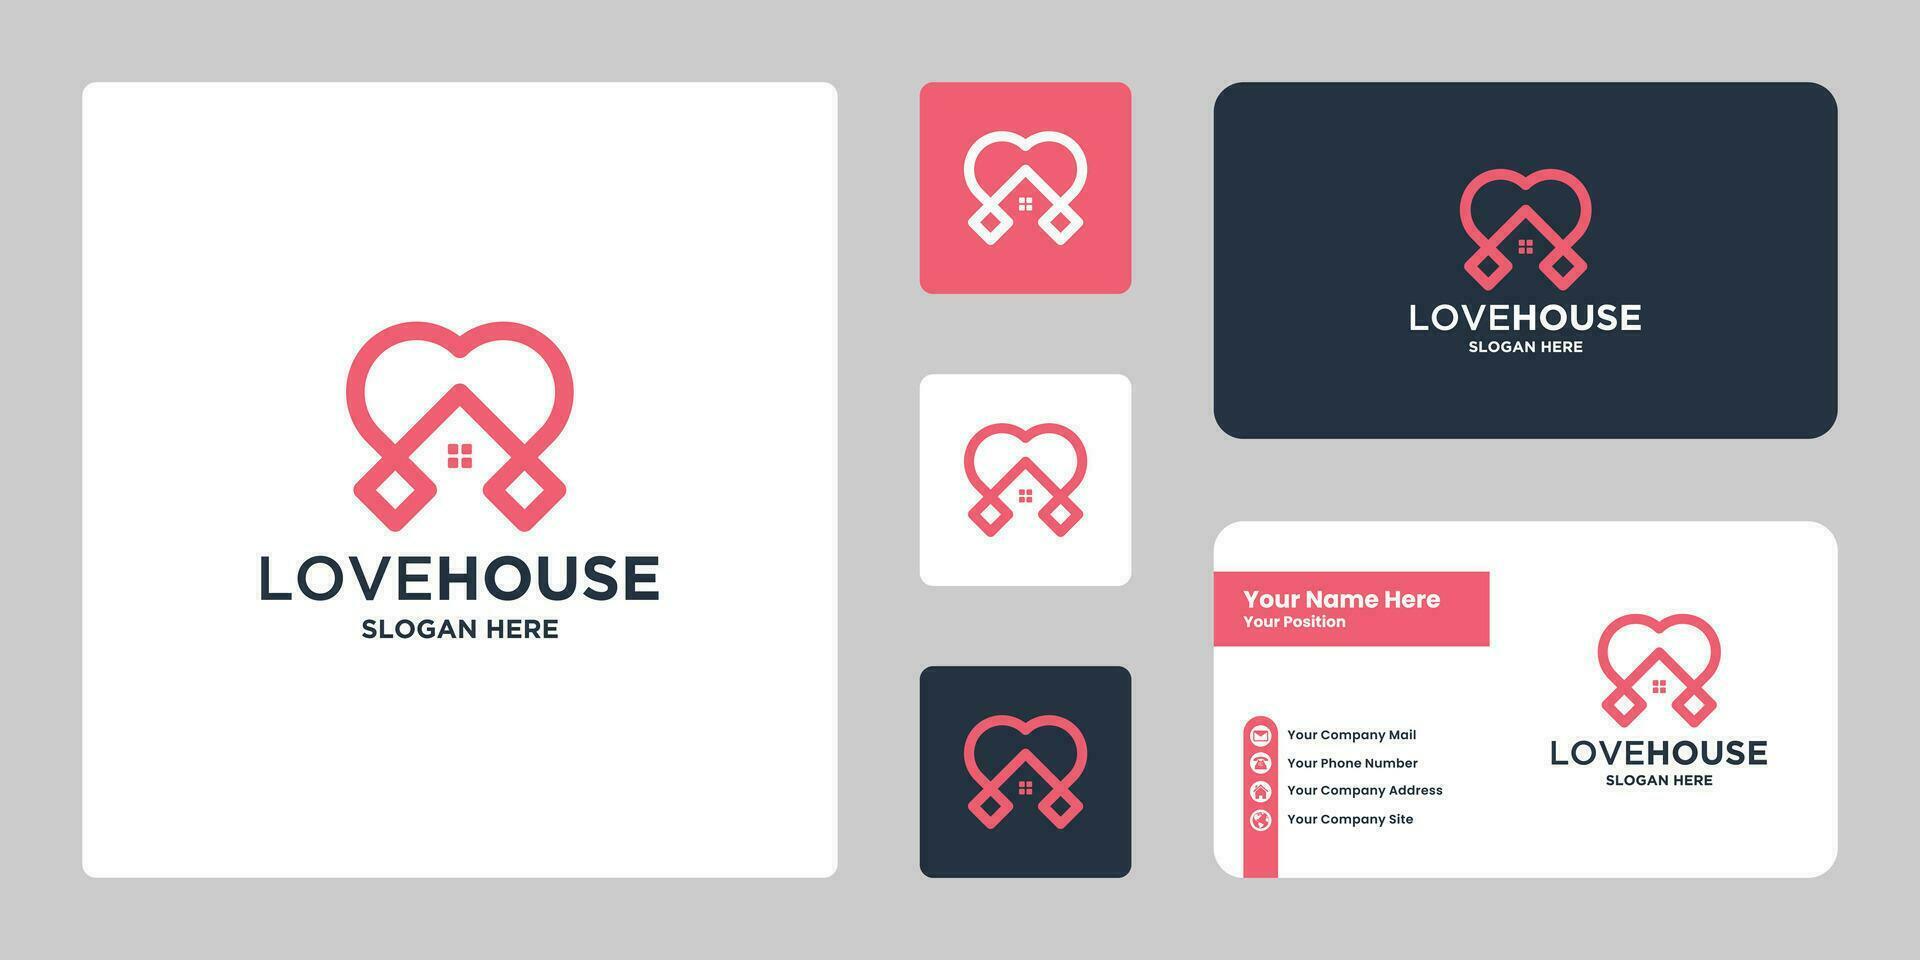 Liebe Haus Logo Design. kreativ Haus und Liebe Kombination. vektor